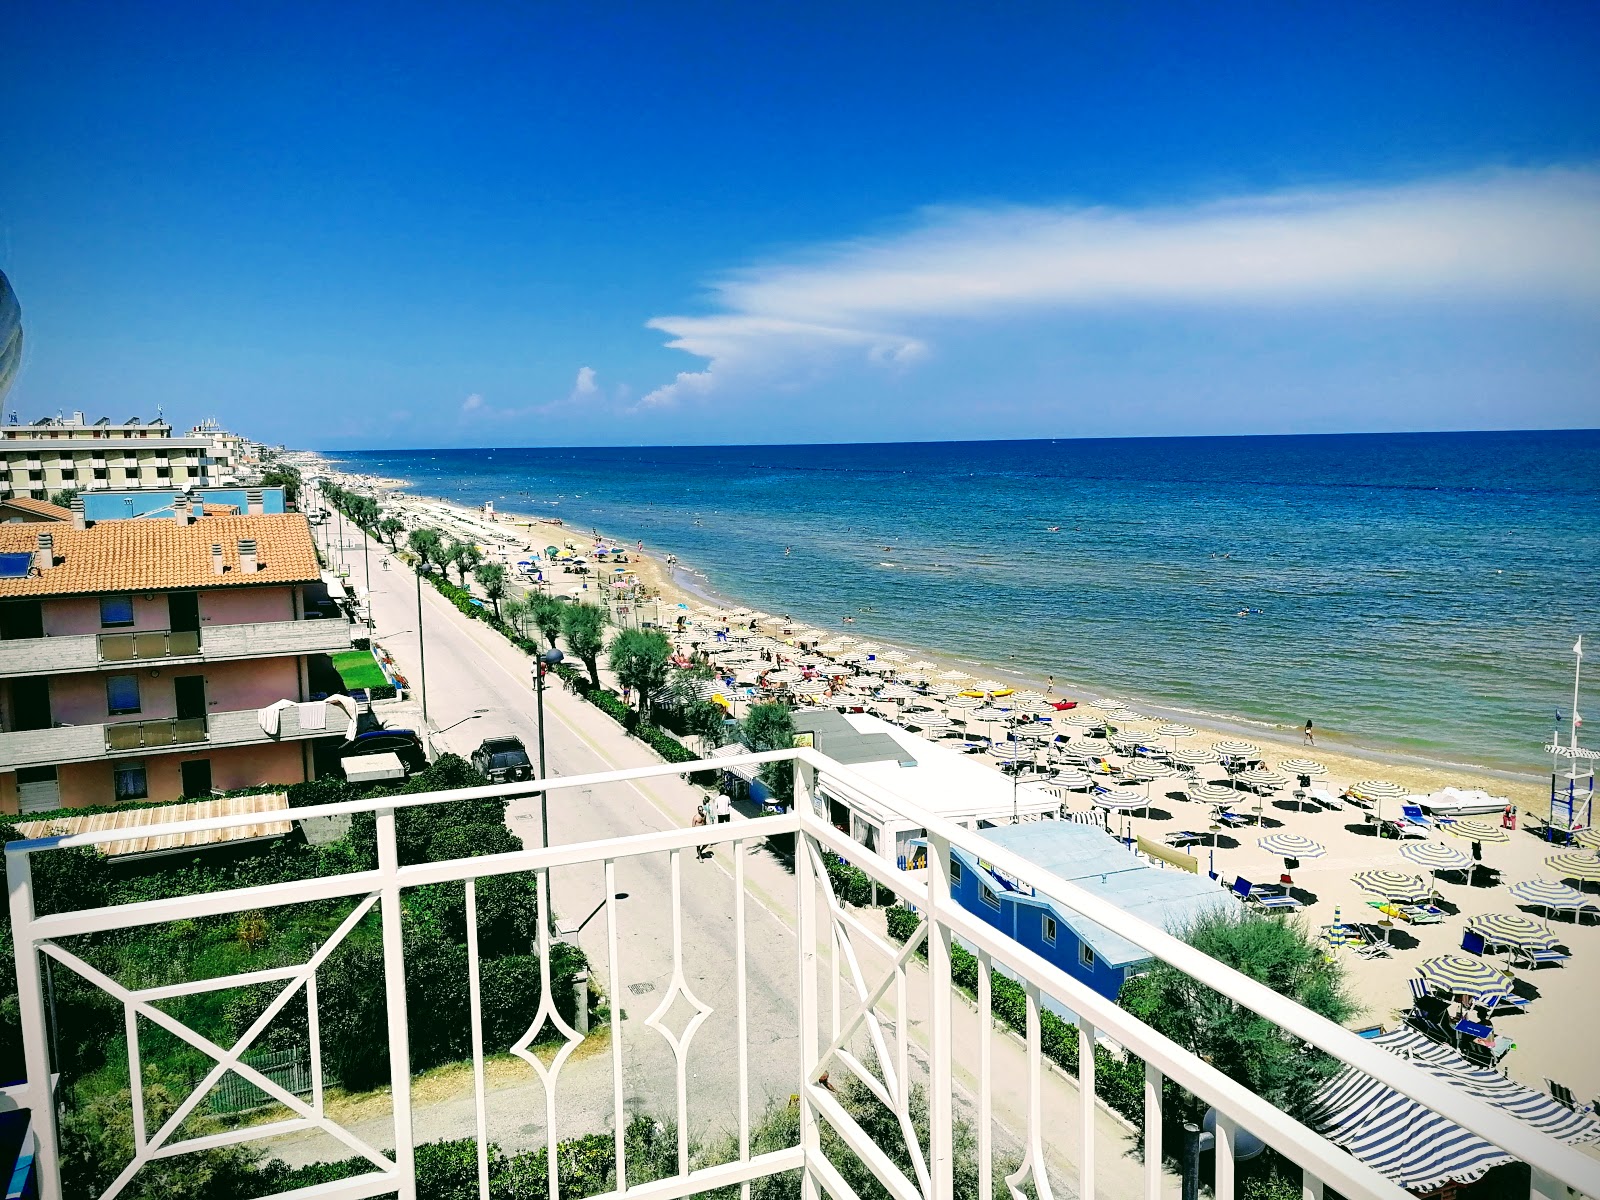 Φωτογραφία του Marotta beach - δημοφιλές μέρος μεταξύ λάτρεις της χαλάρωσης